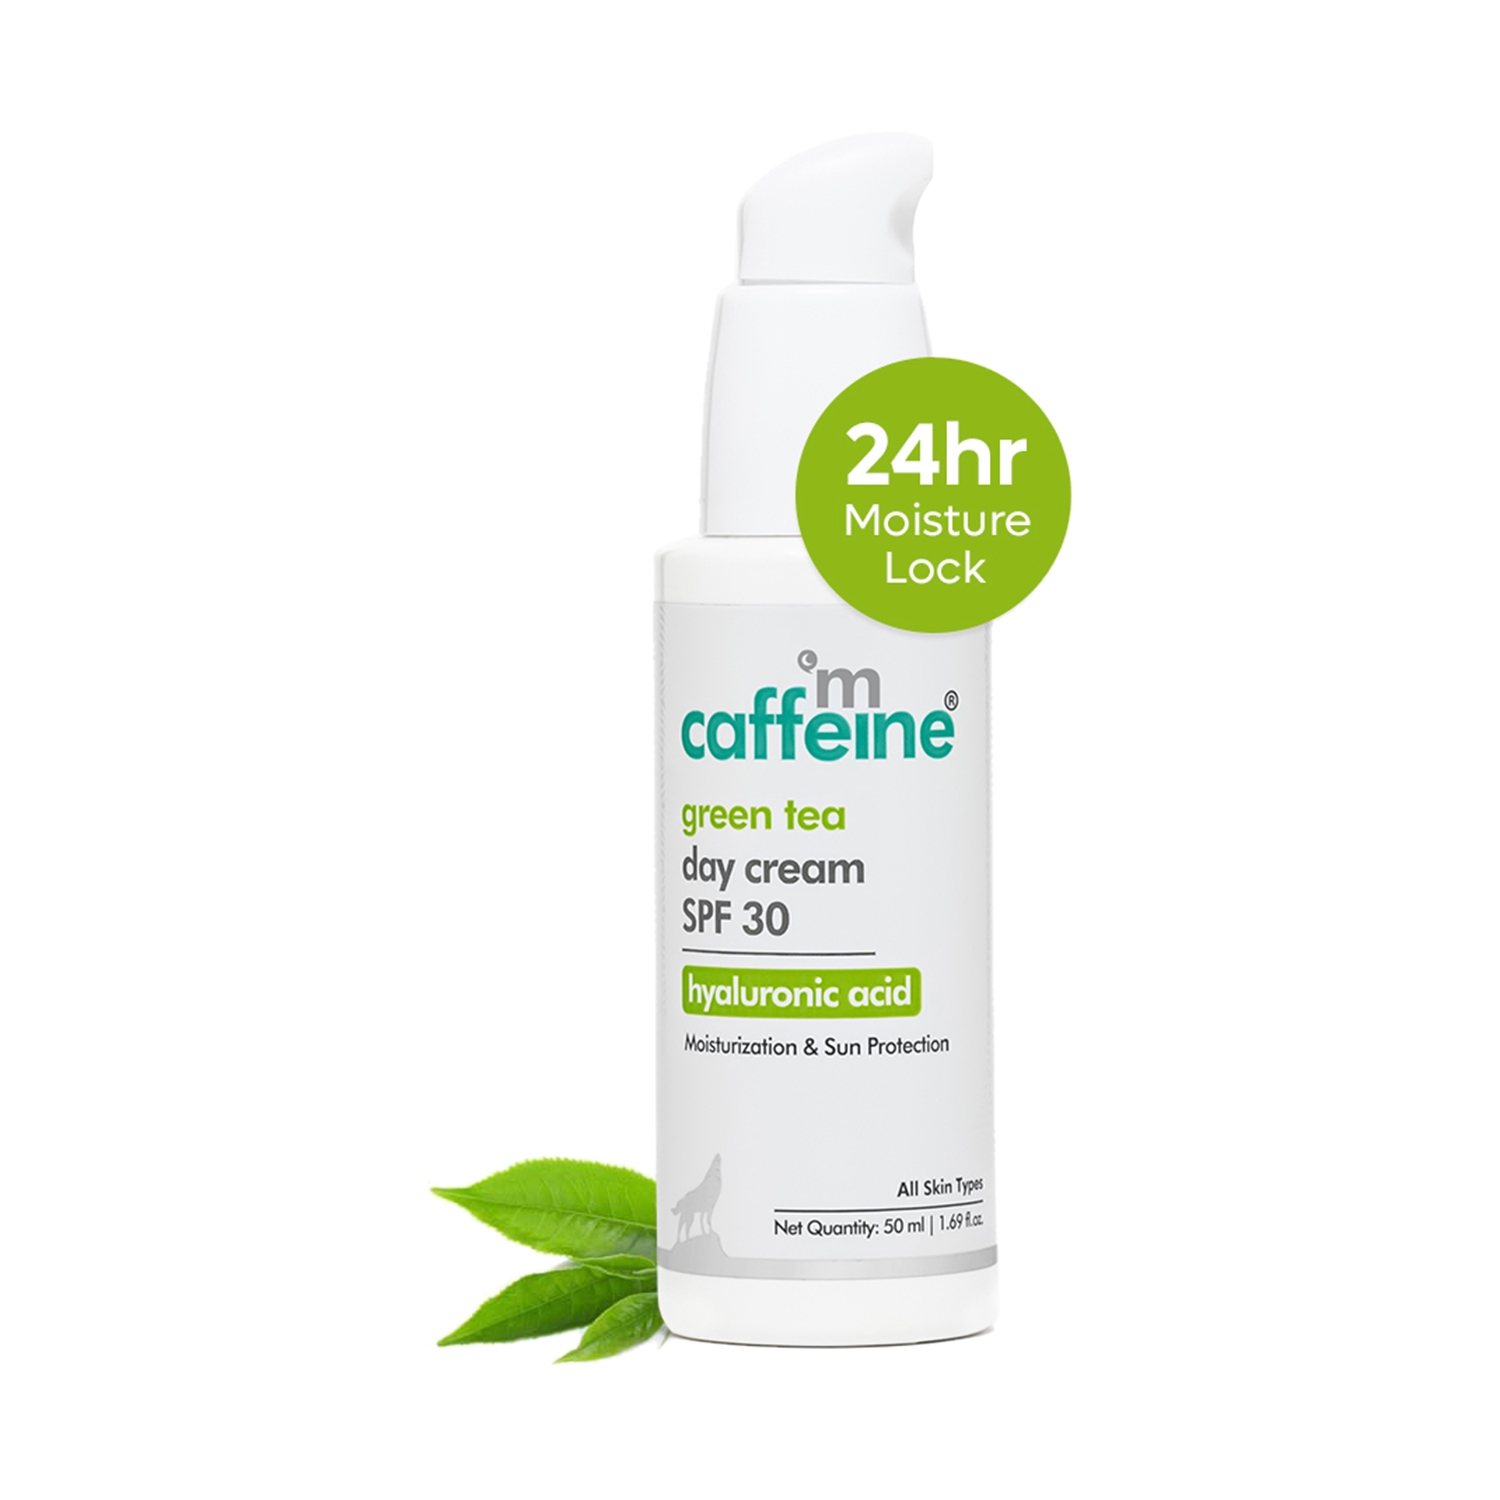 mCaffeine | mCaffeine Green Tea Day Cream SPF 30 with Hyaluronic Acid (50ml)